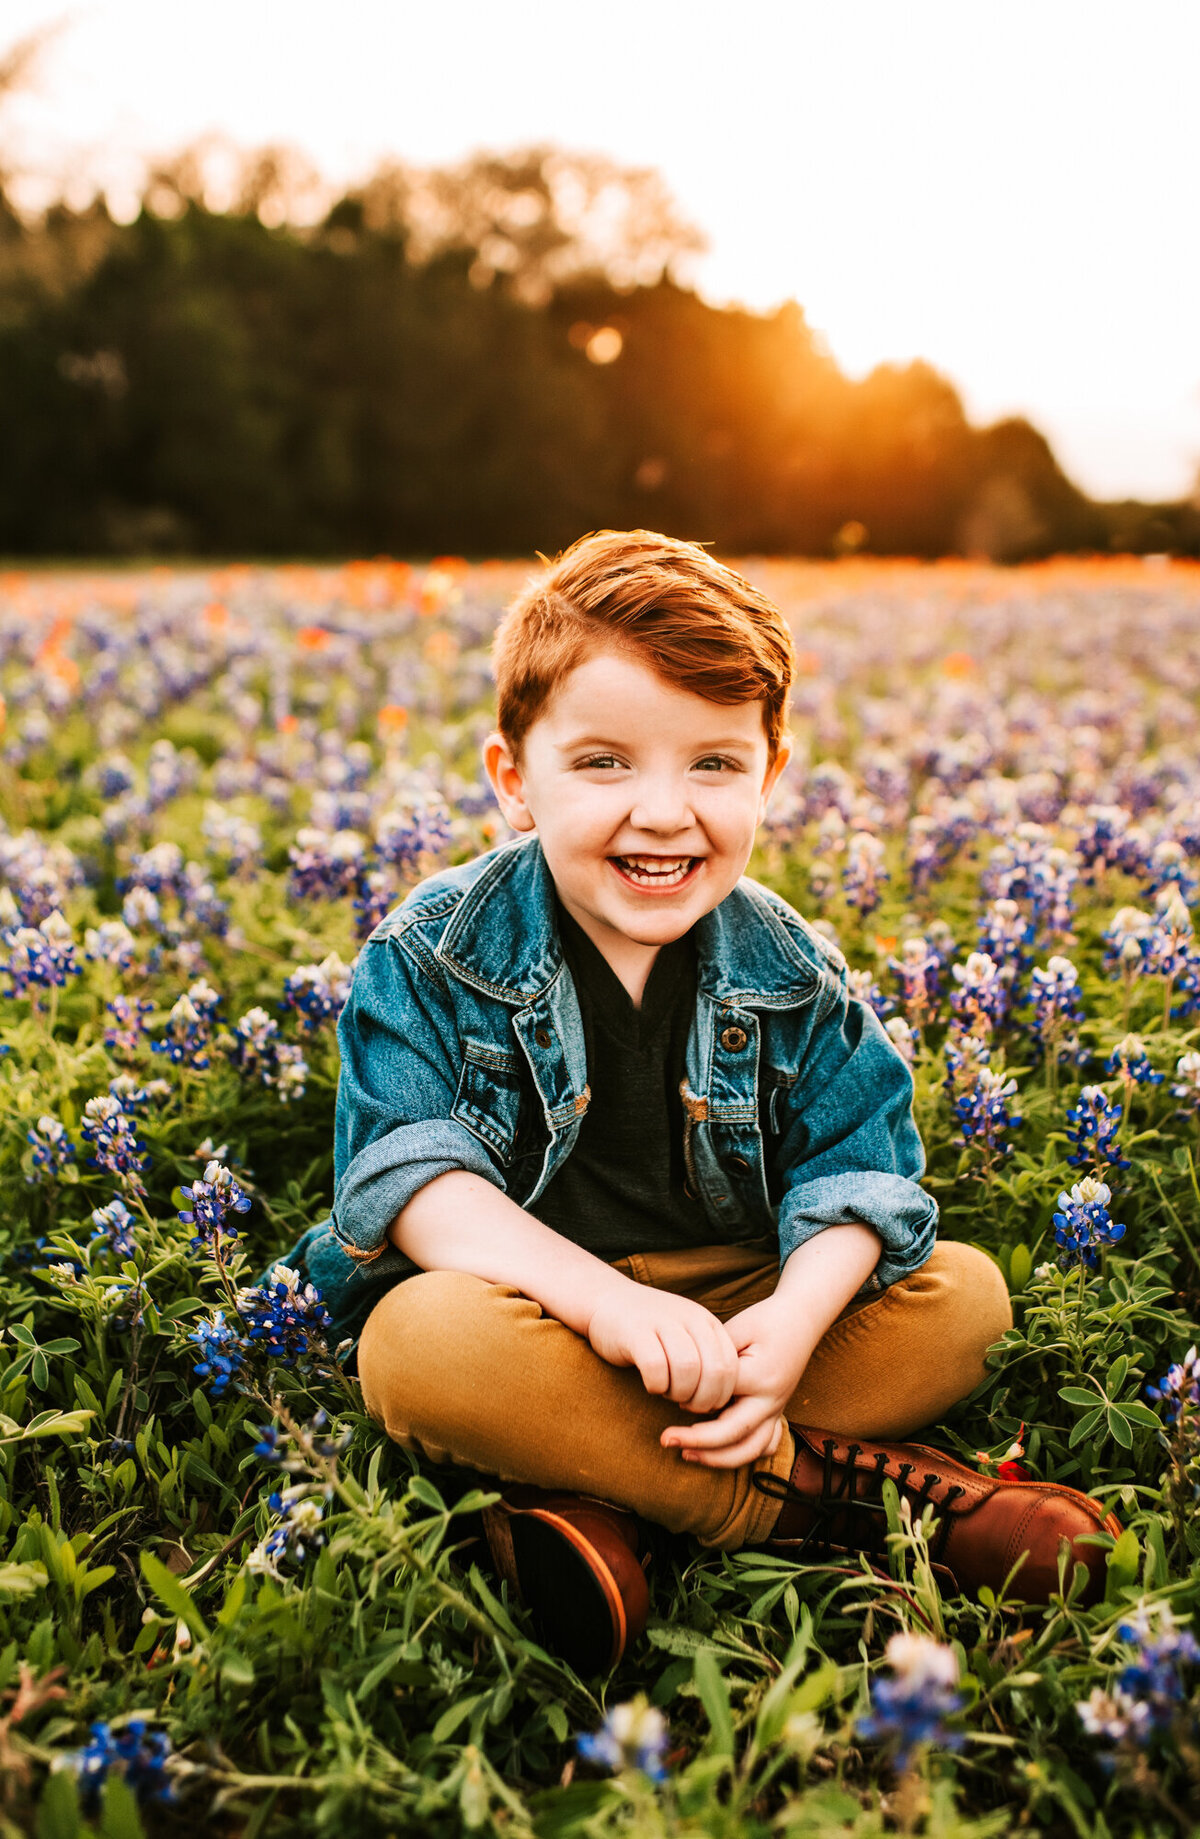 Little boy in a jean jacket sitting in a field of bluebonnets at sunset.